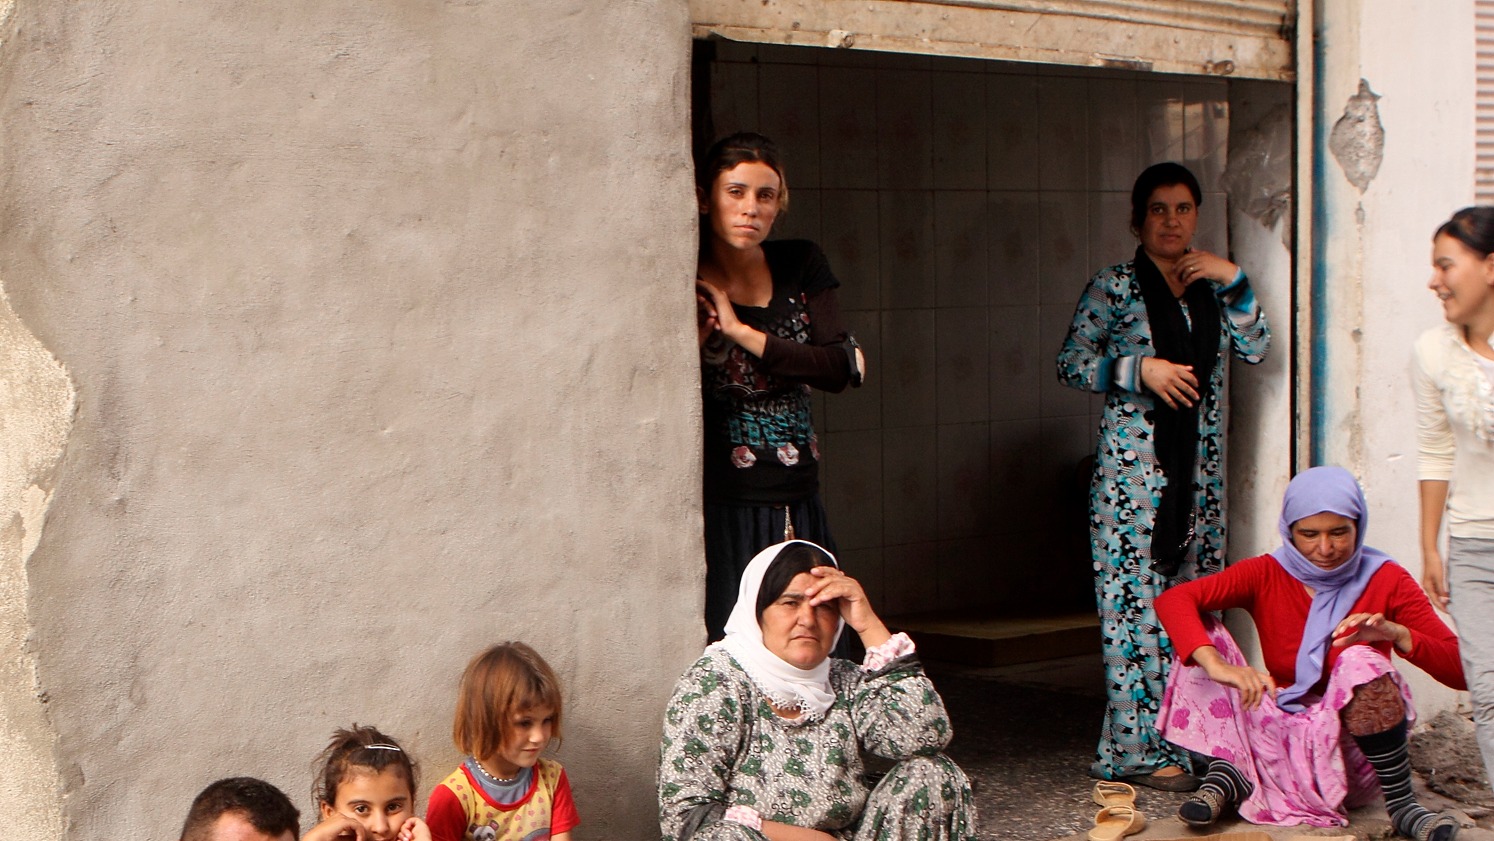 Beaucoup de femmes yézidies se retrouvent dans des camps de réfugiés au nord de l'Irak (Photo d'illustration:Christ Church of Jerusalem/Flickr/CC BY-NC-ND 2.0)